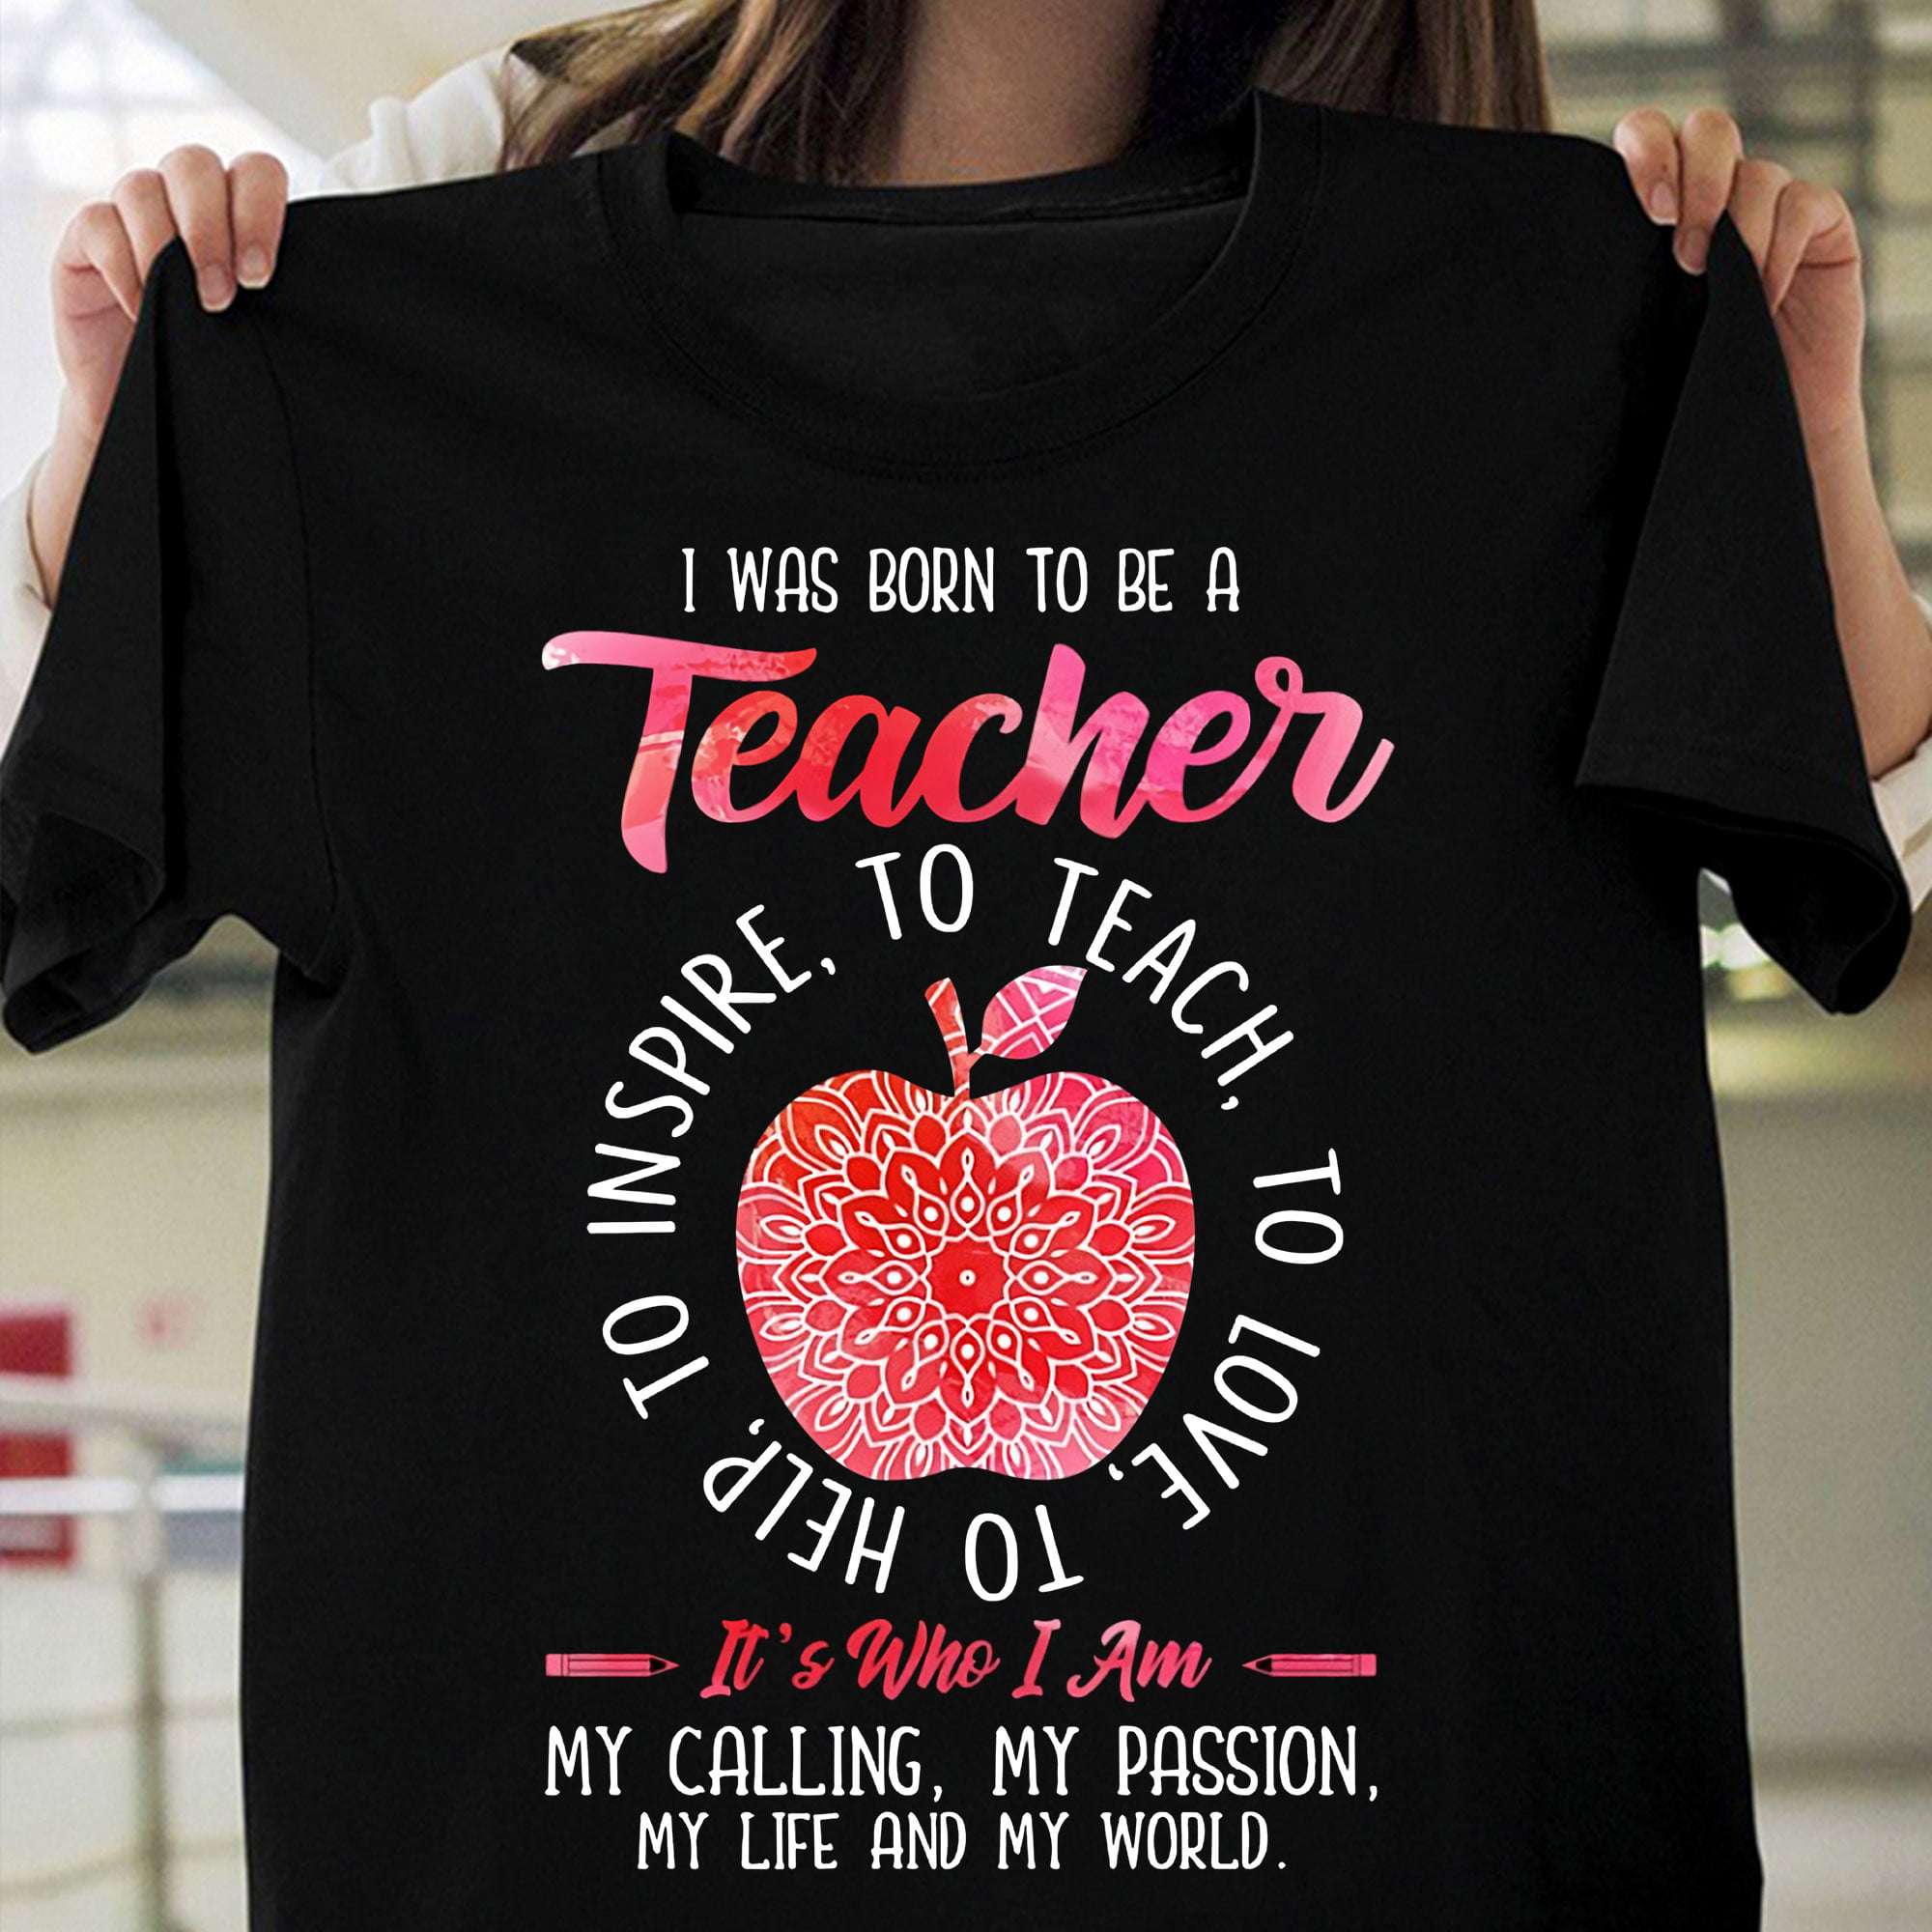 I was born to be a teacher - Teacher life, teacher the educational job